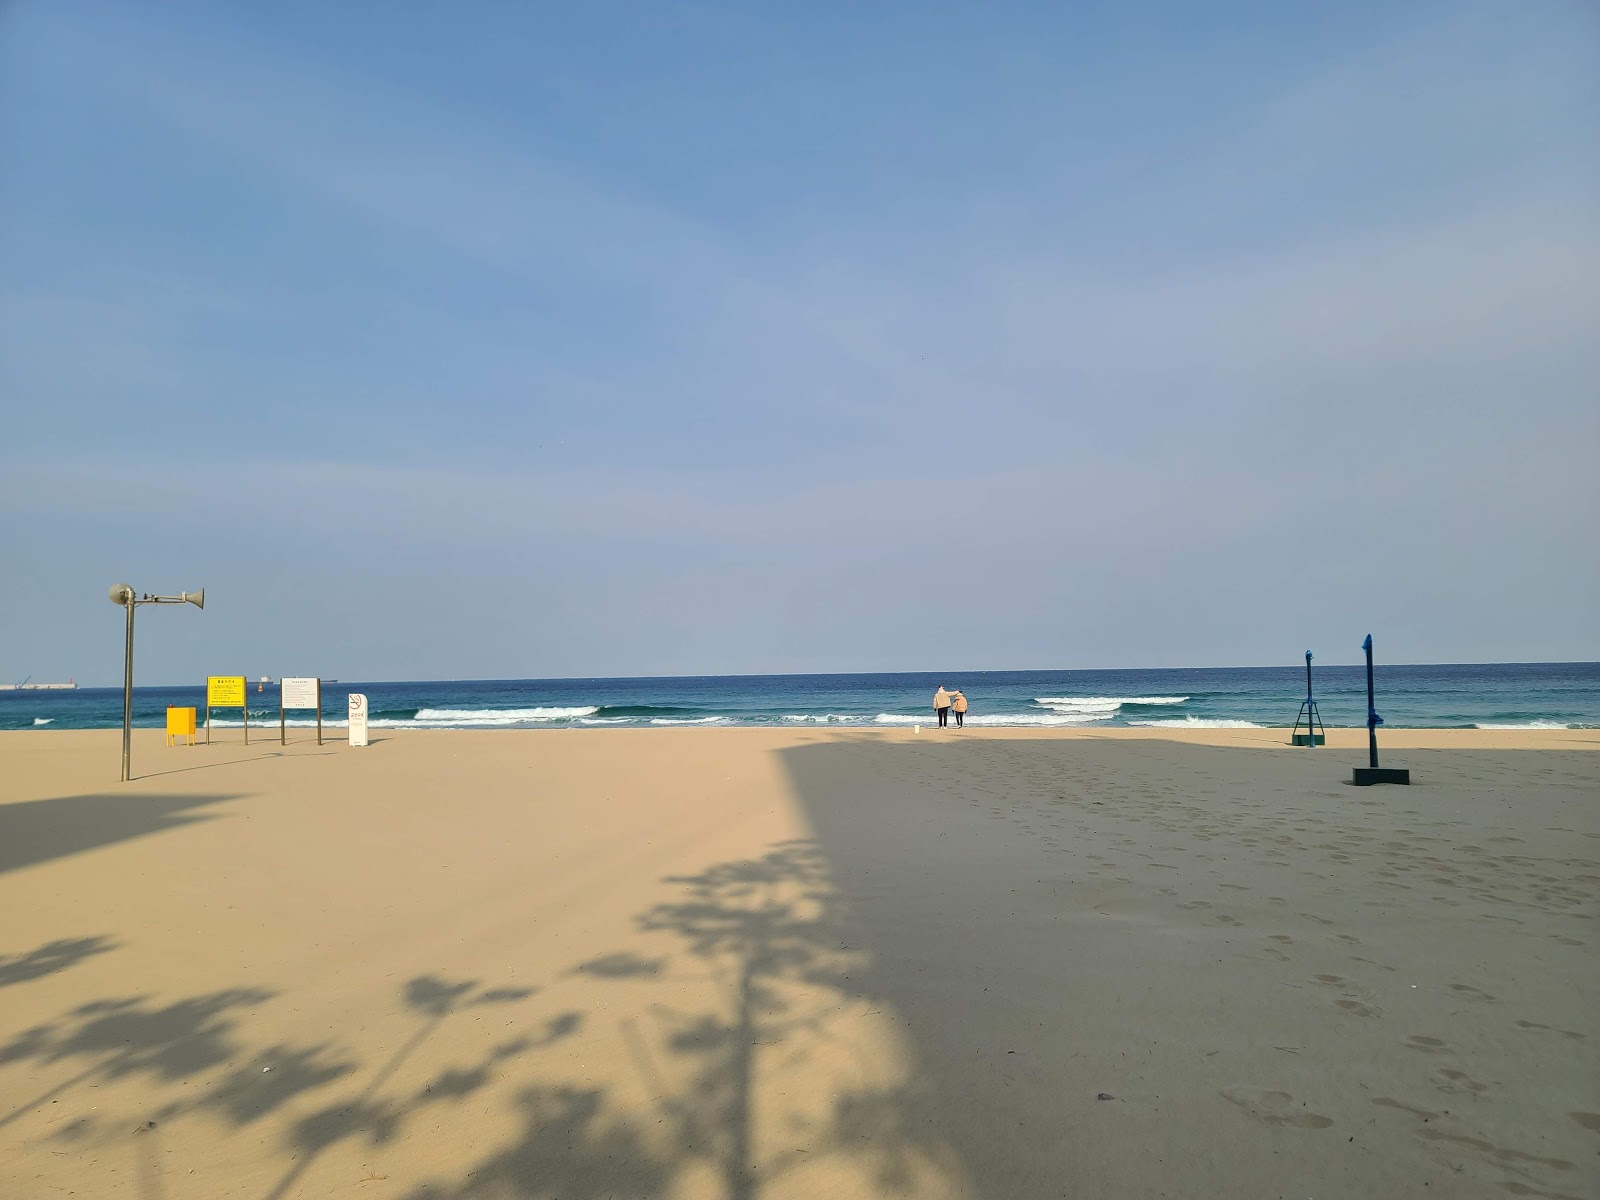 Fotografija Samcheok Beach priljubljeno mesto med poznavalci sprostitve